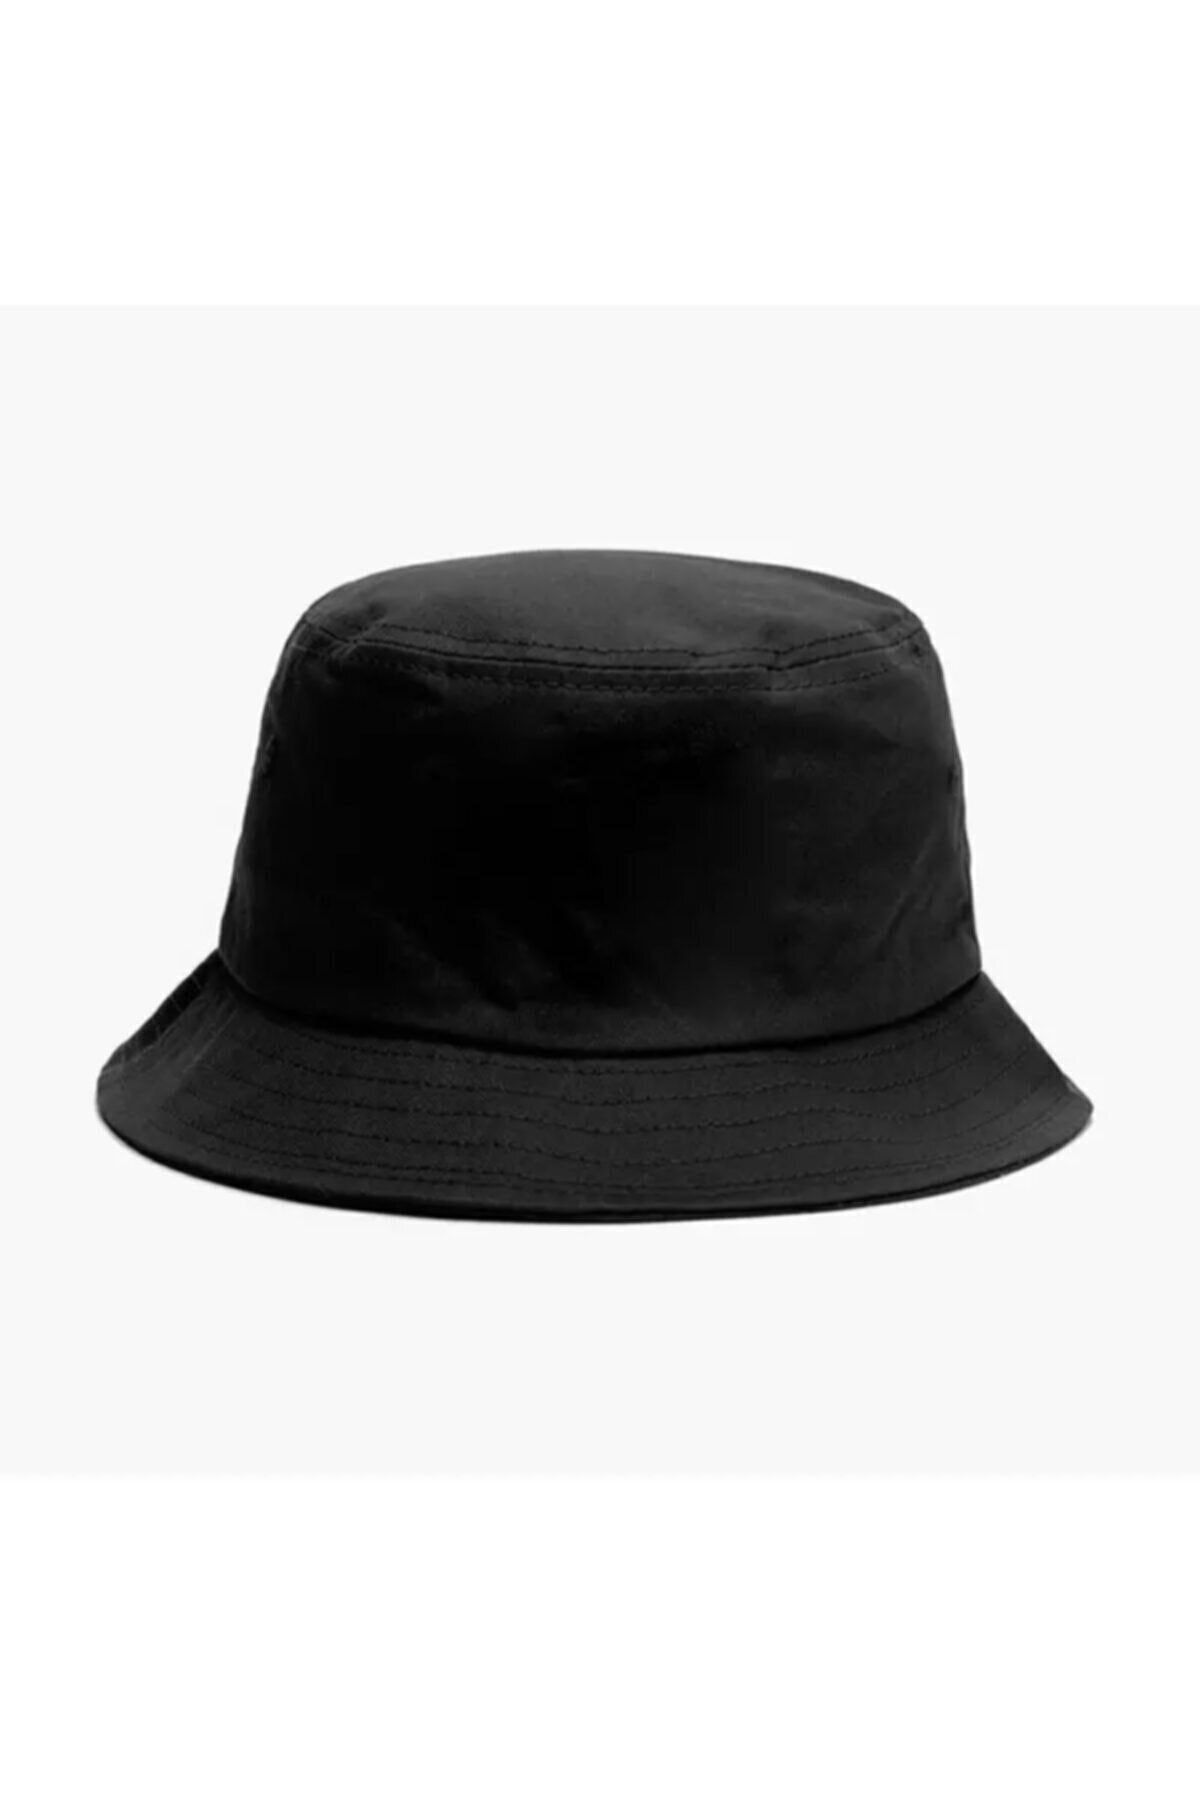 Köstebek Moda Düz Siyah Kova Şapka Balıkçı Şapka Bucket Hat